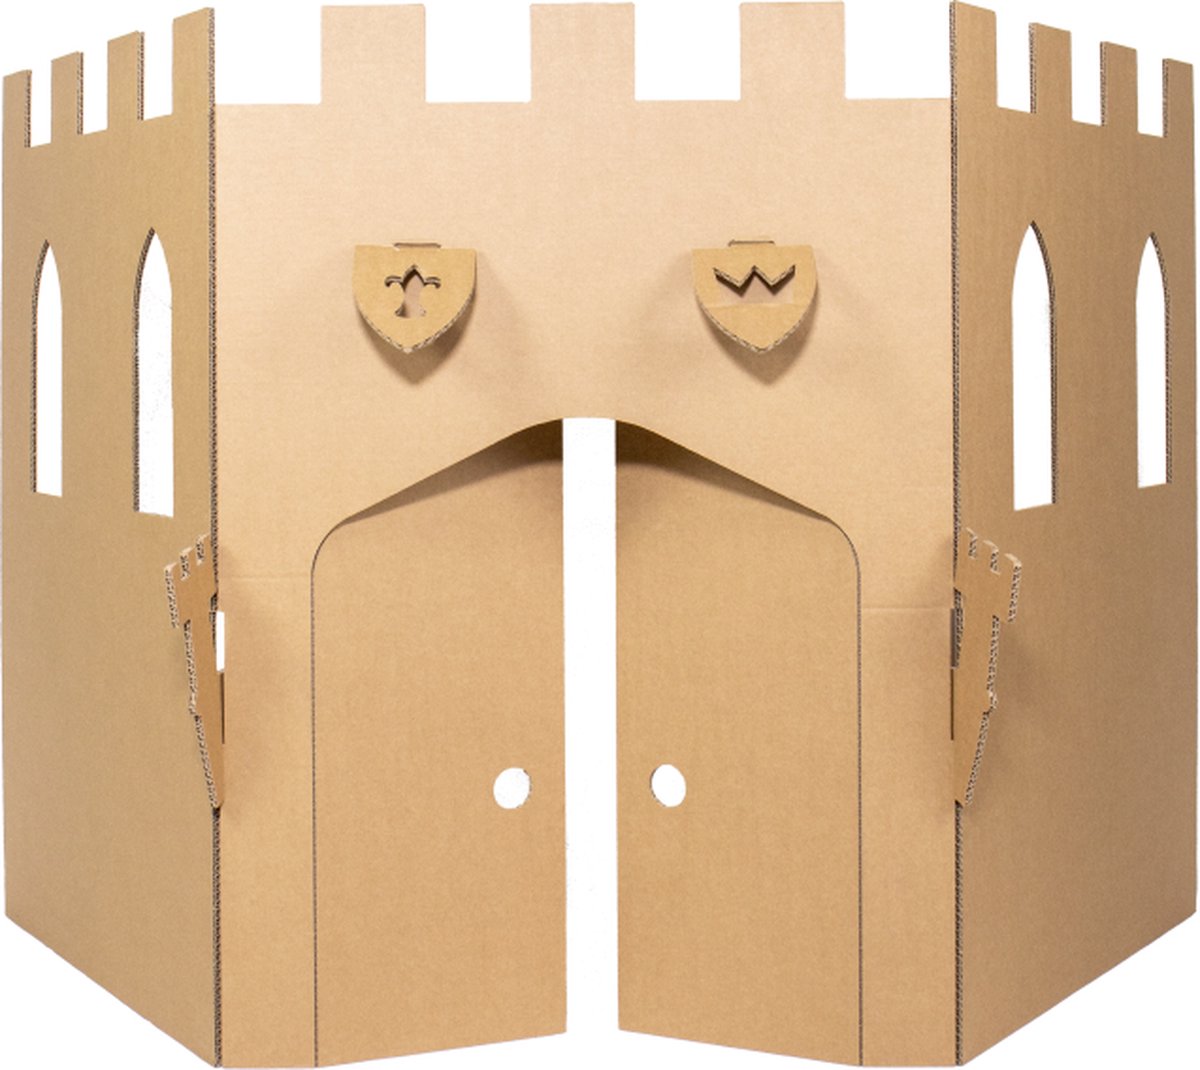 Kartonnen Speelkasteel wand - Speelhuis - Kartonnen speelgoed - 100% recyclebaar - 200x7x96 cm - Helemaal te versieren met verf - Cadeau van Duurzaam Karton - KarTent